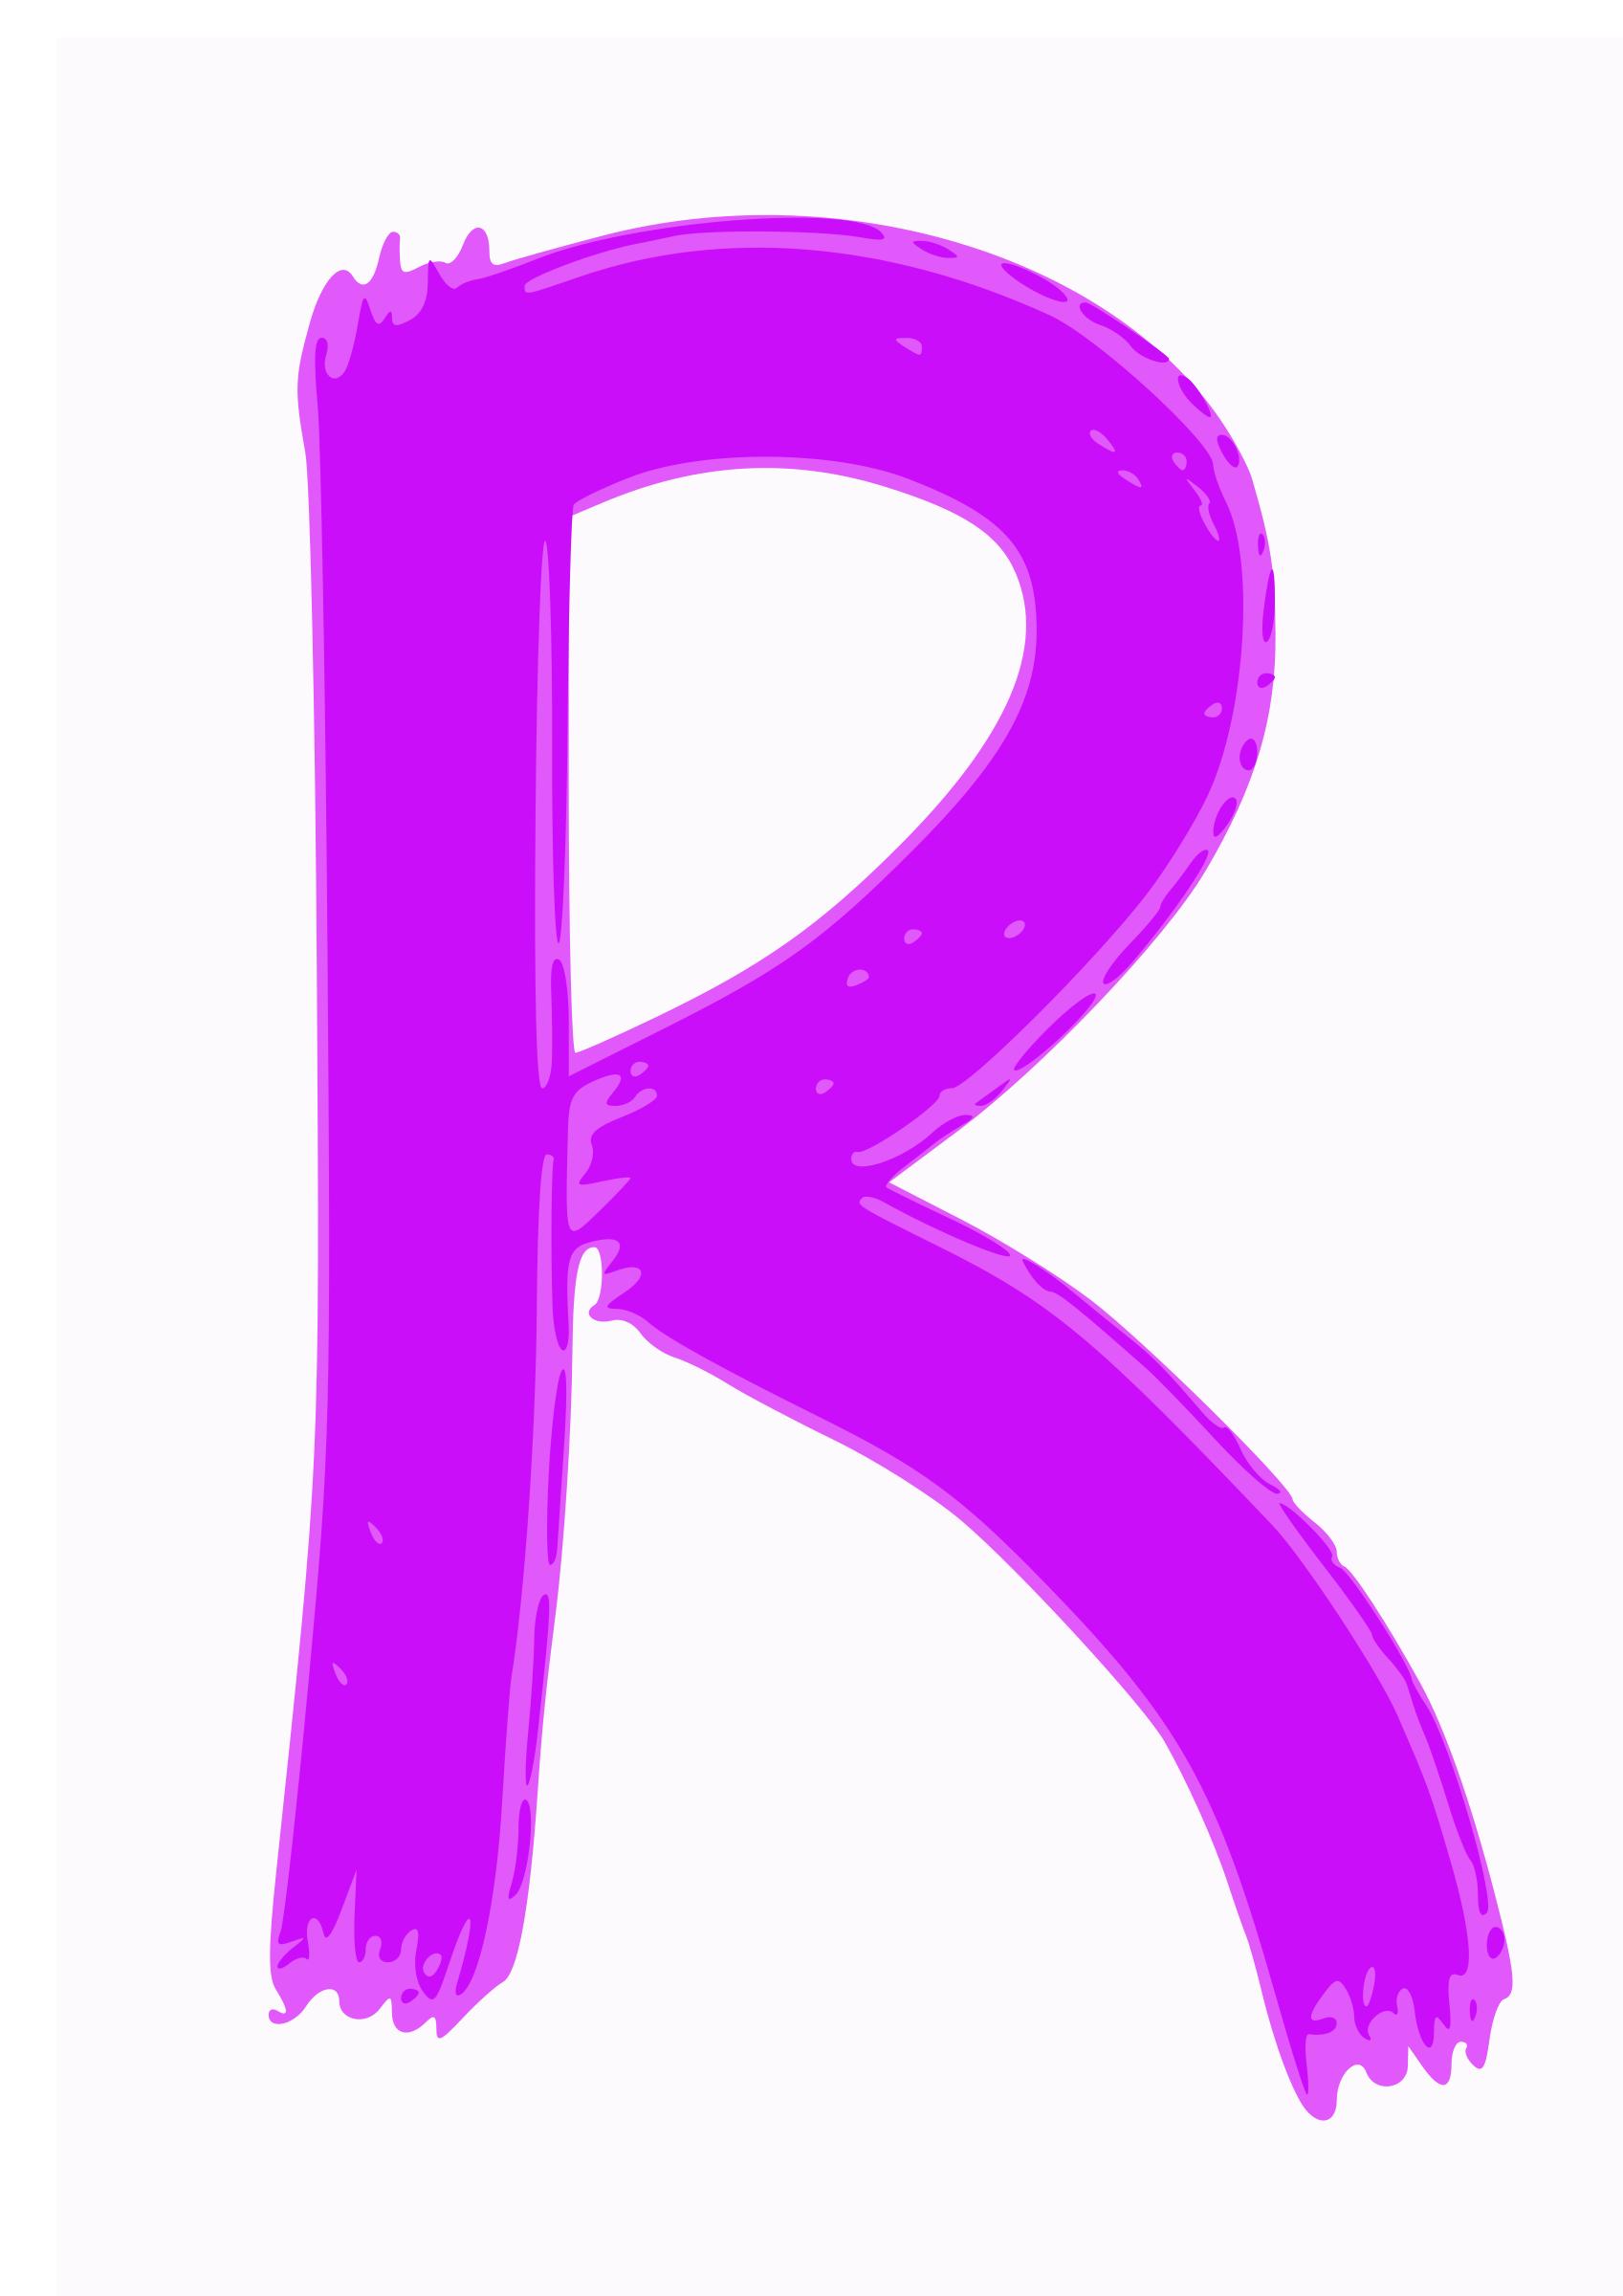 R icons